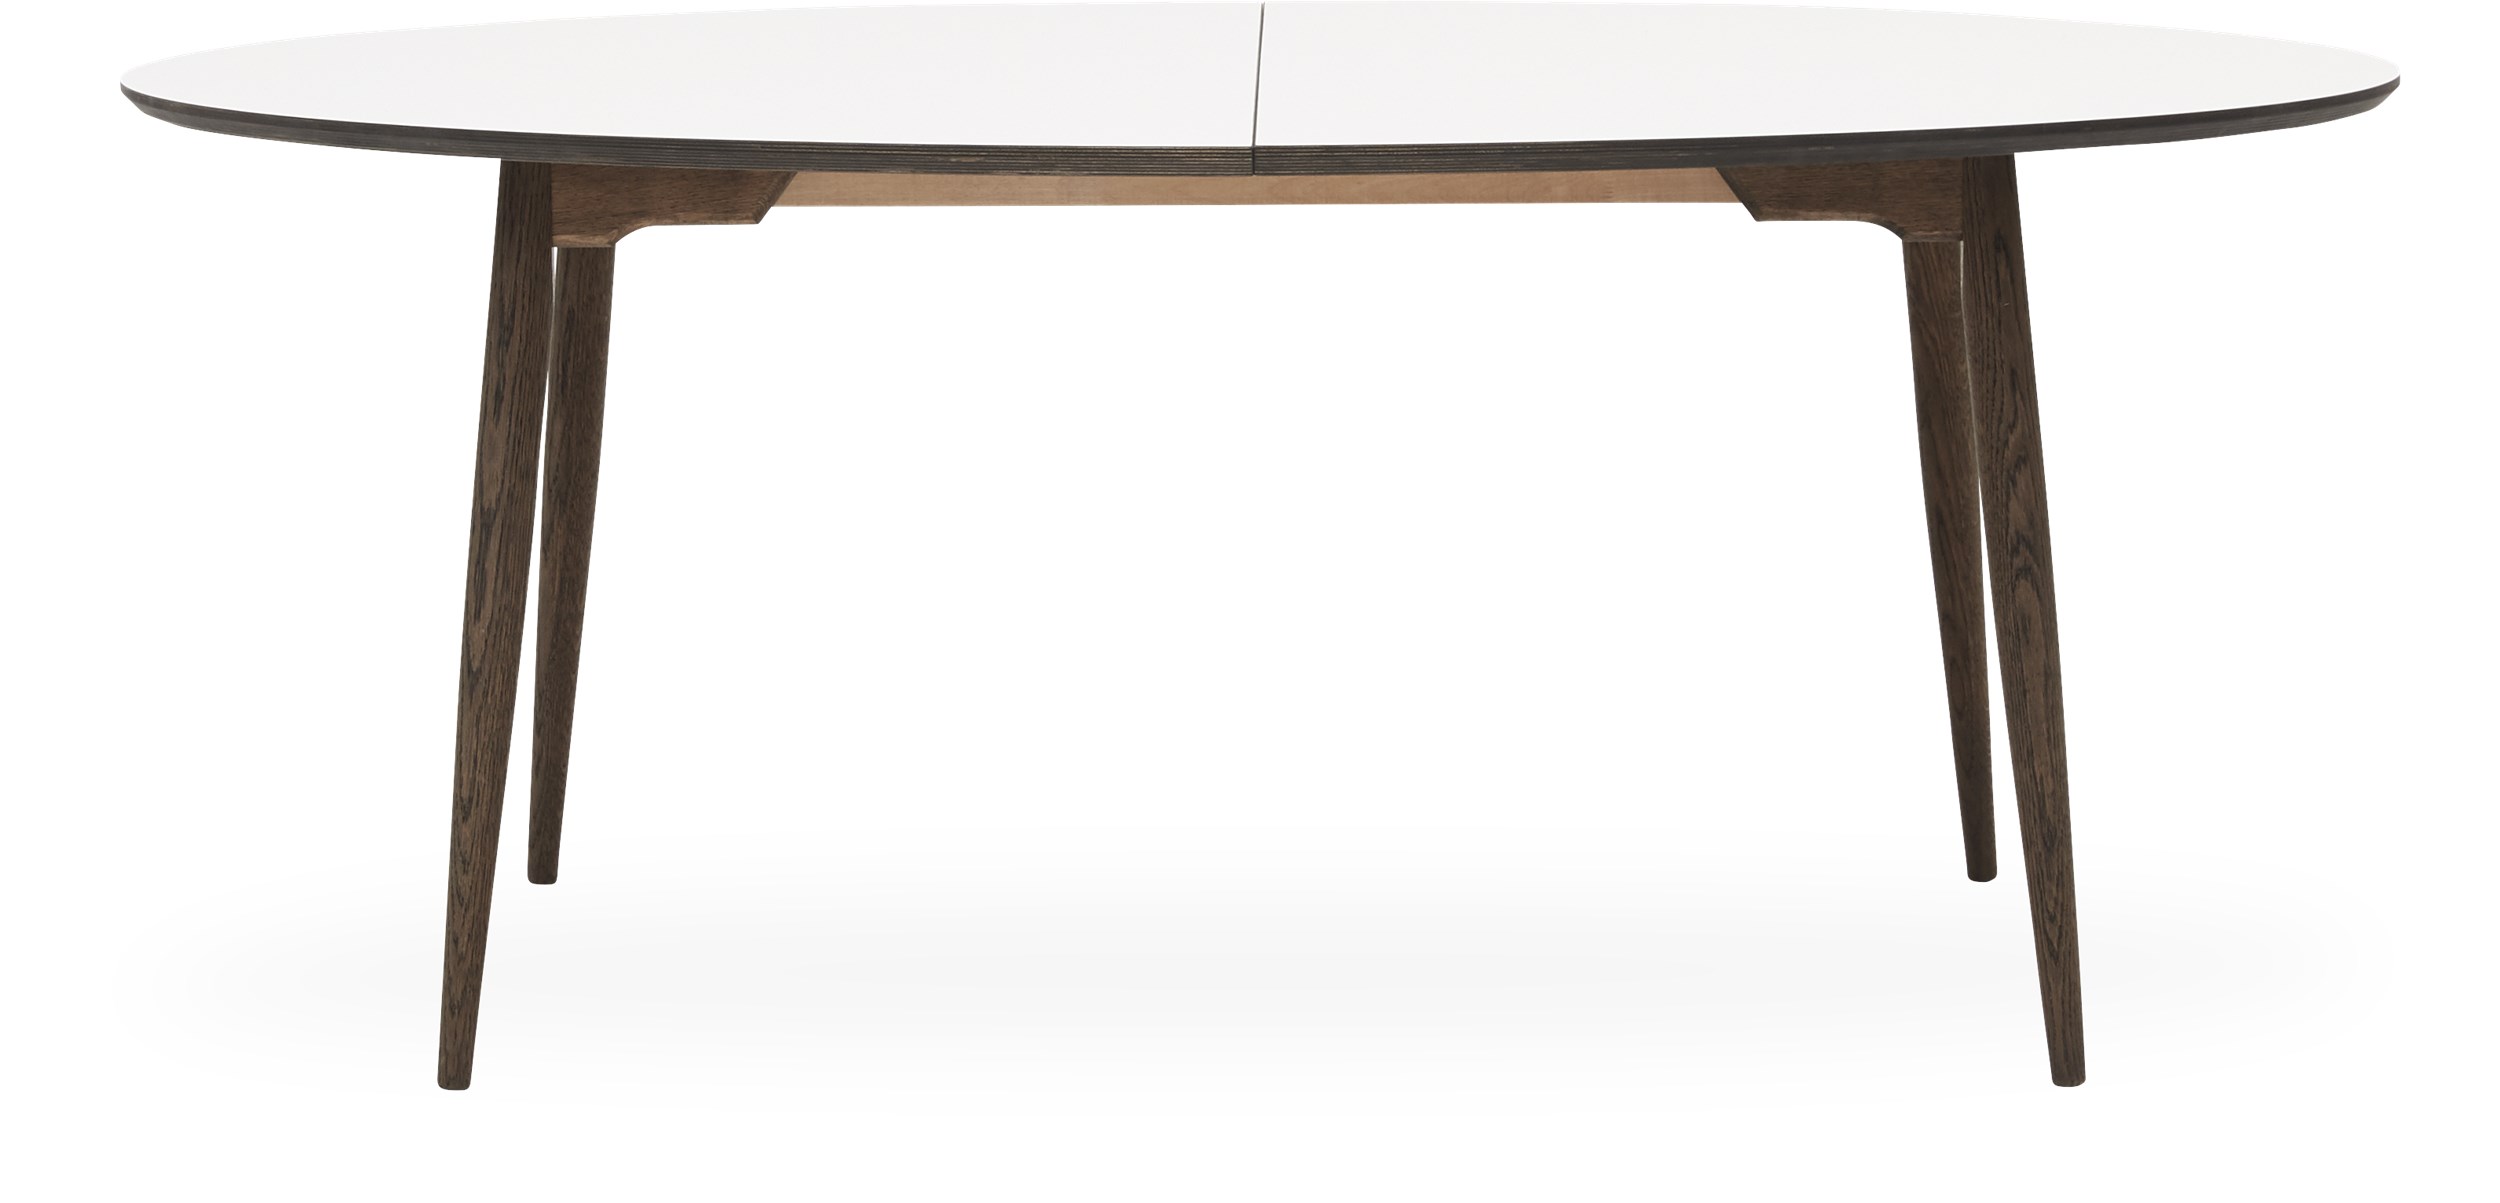 Haslev 7-H Spisebord 180 x 105 x 74 cm - Top i hvid laminat, kant i mørk gråolie krydsfinér og ben i mørk gråolie. massiv eg